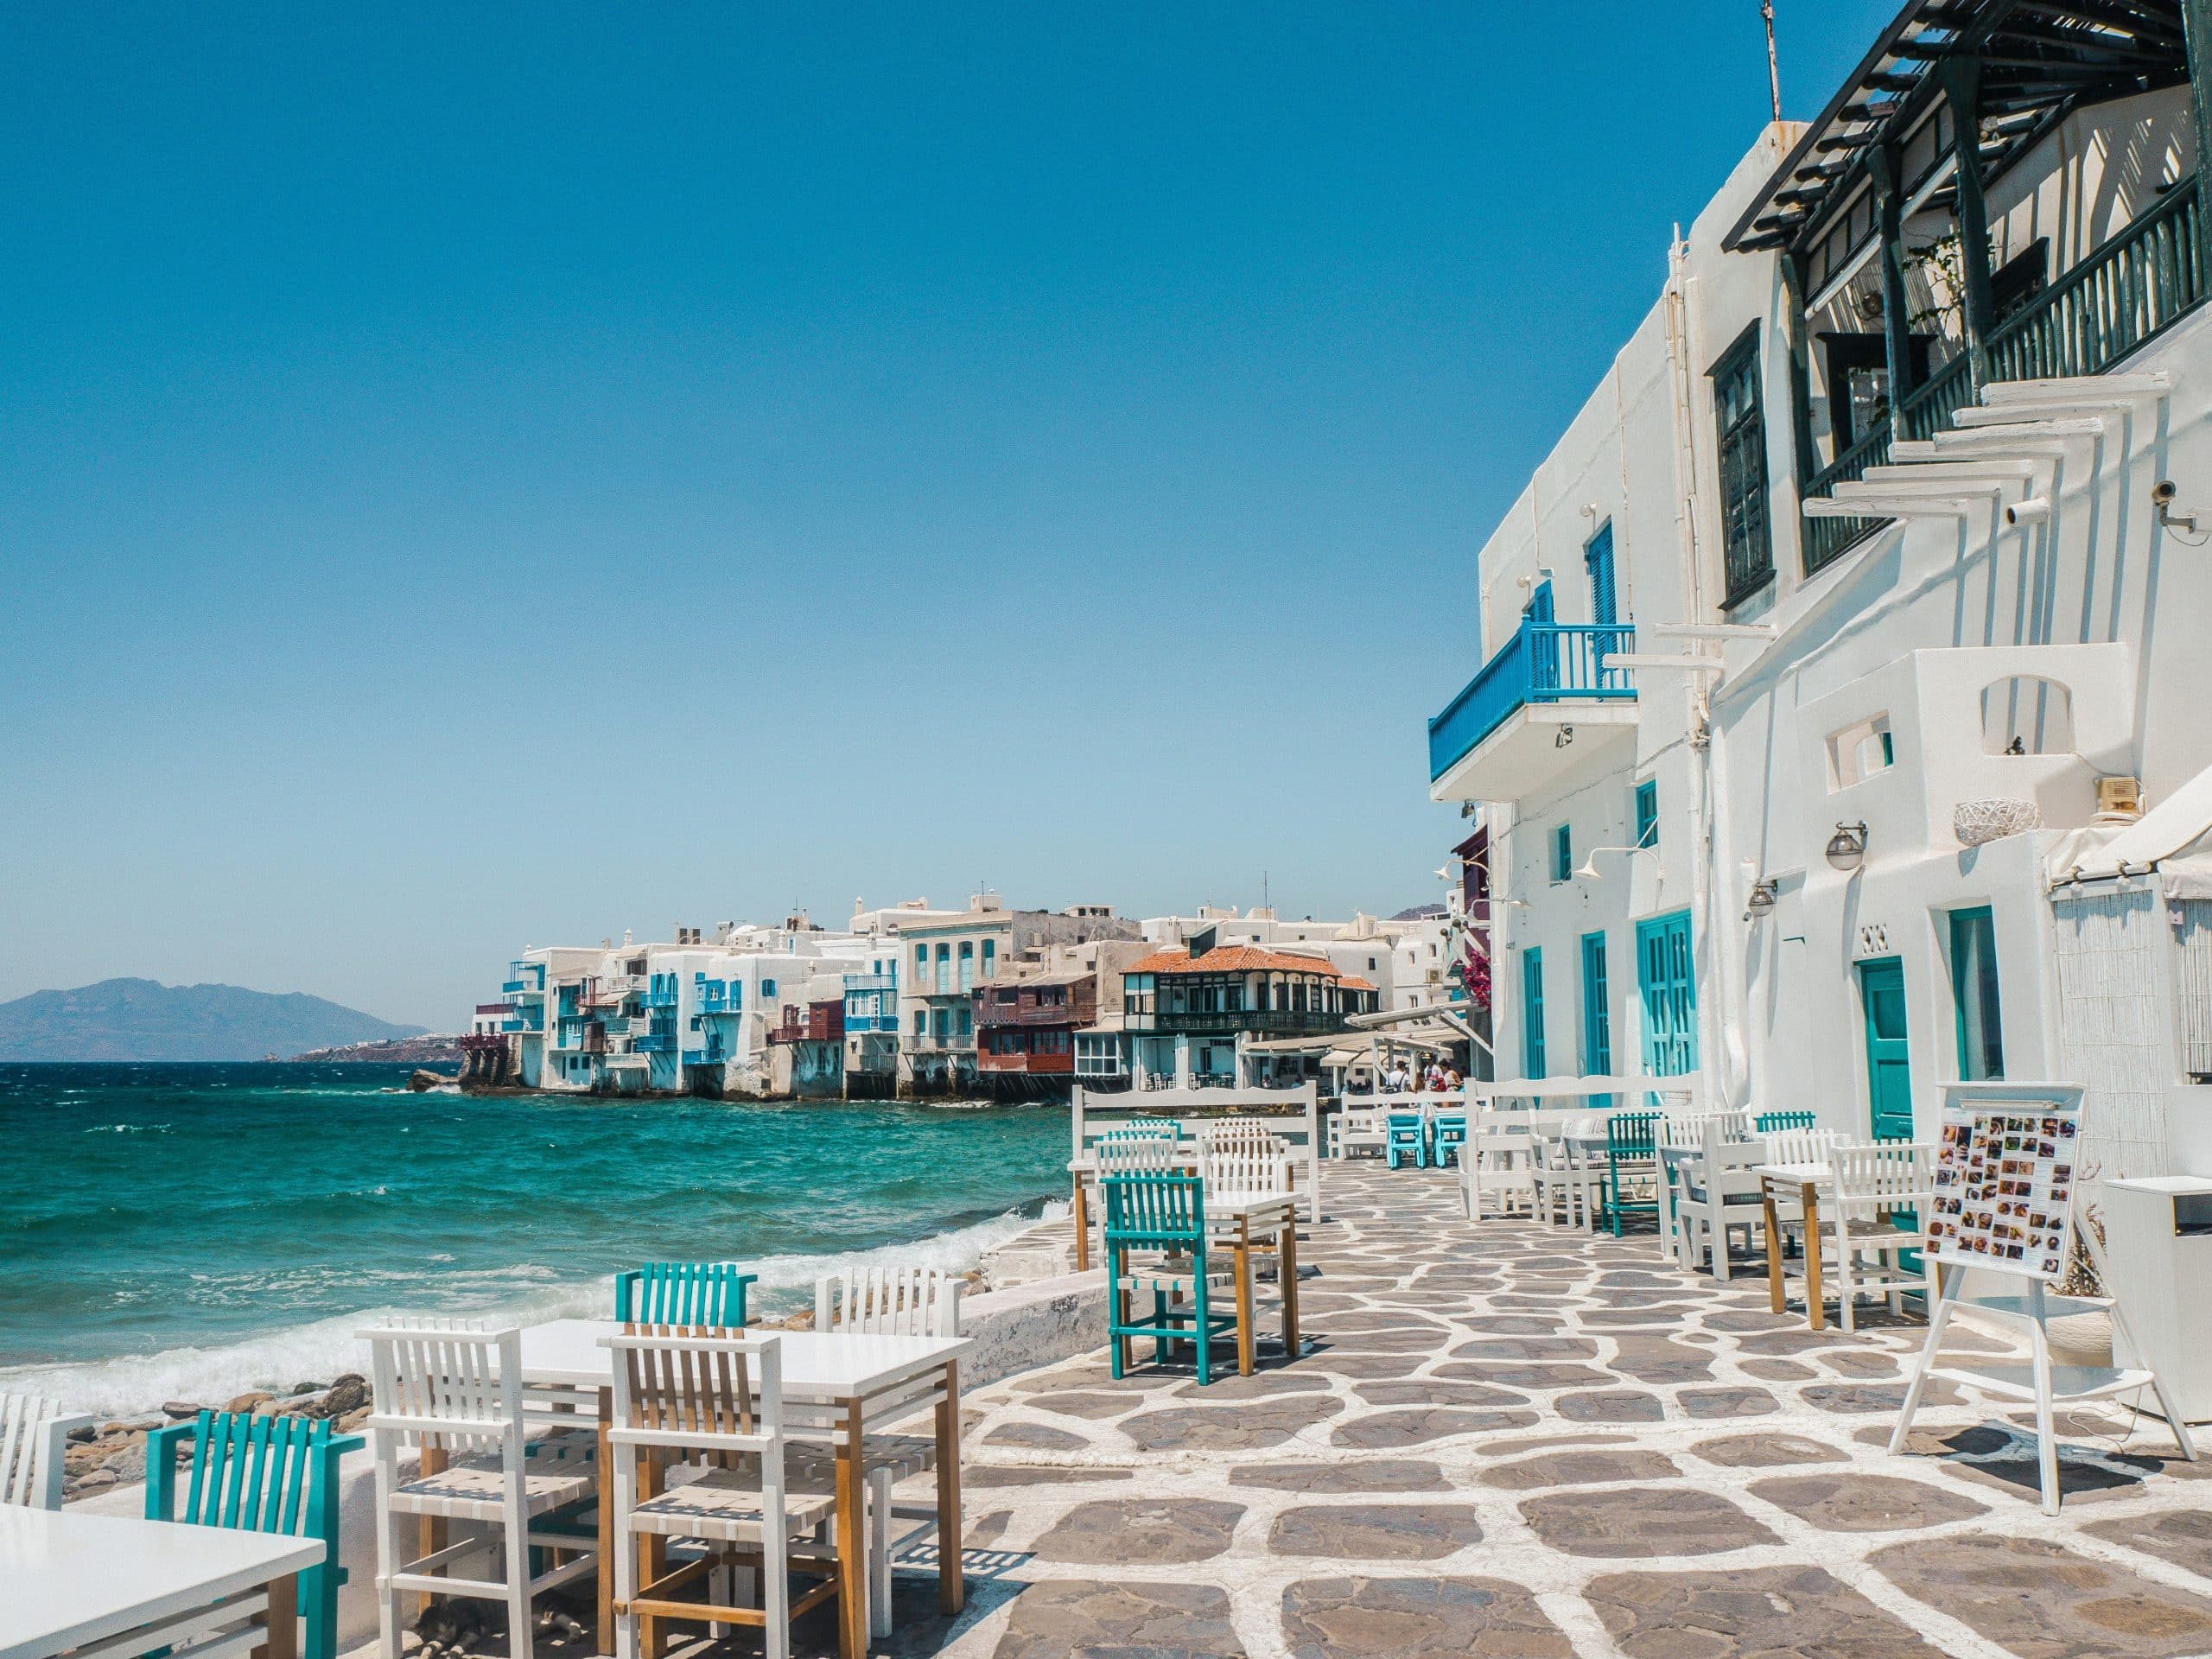 découvrez la beauté et l'histoire des îles grecques, avec leurs magnifiques plages, leurs sites archéologiques et leurs charmants villages traditionnels.